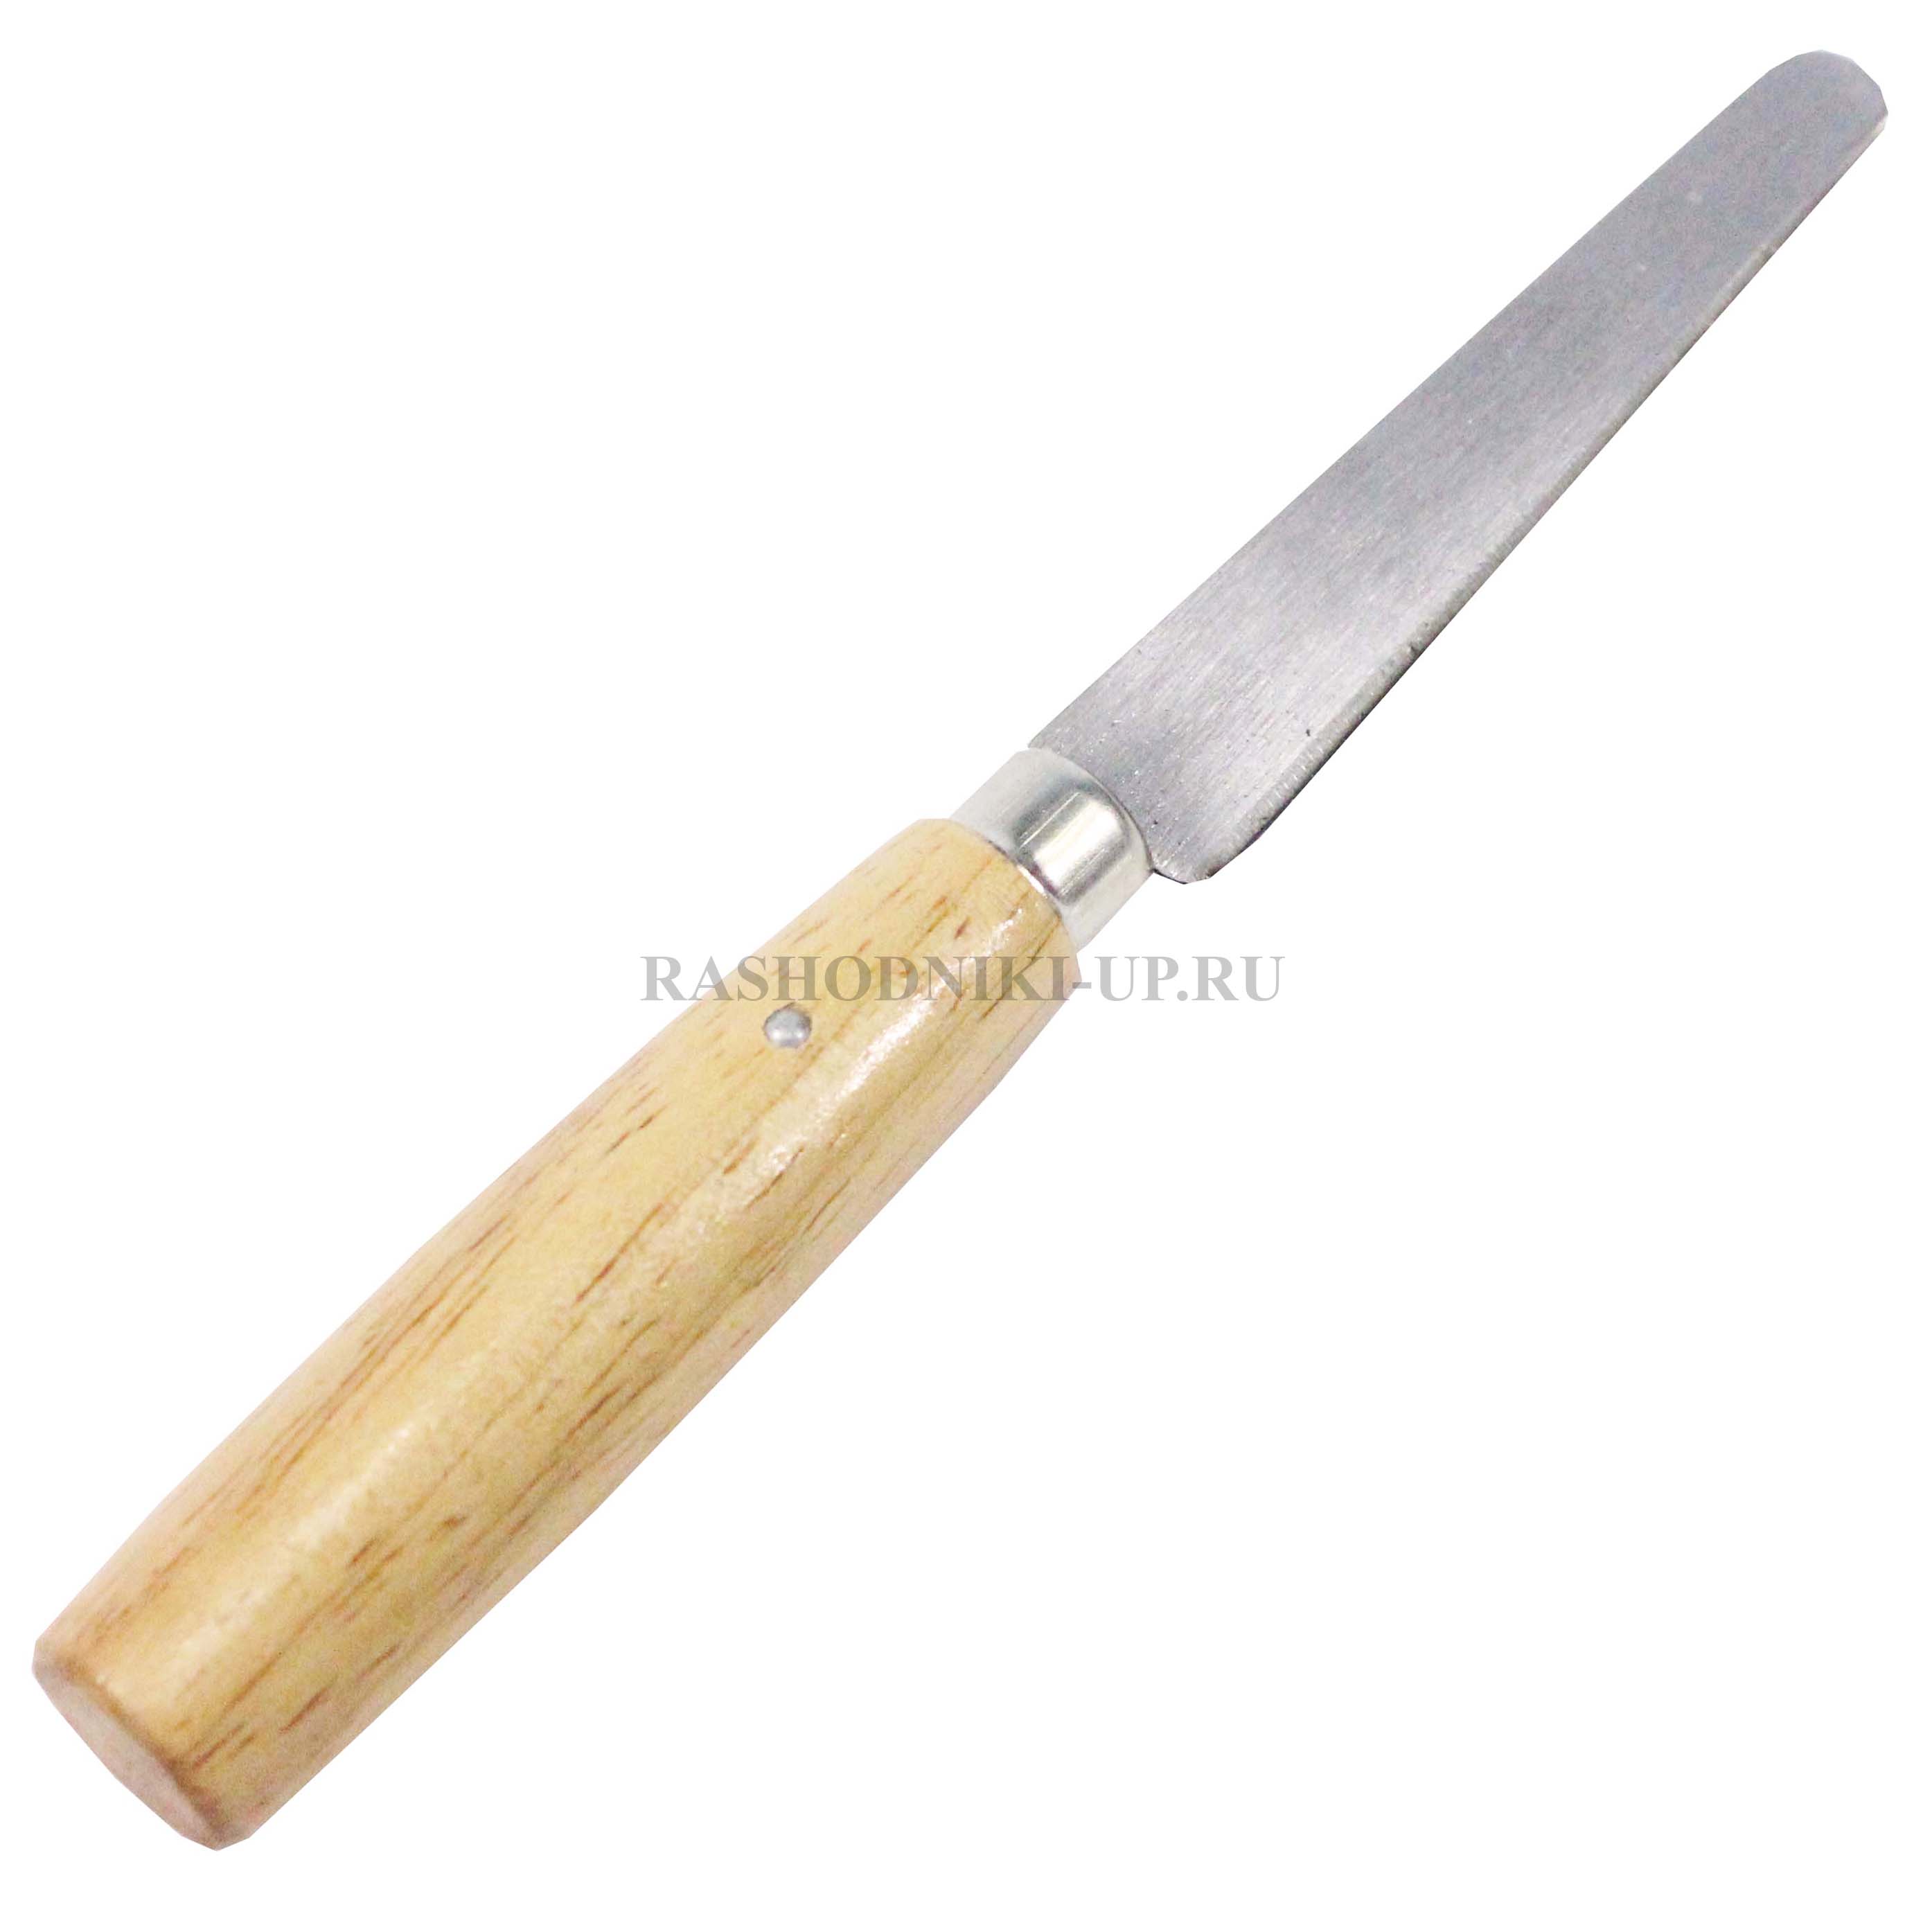 Нож для резины 14-305